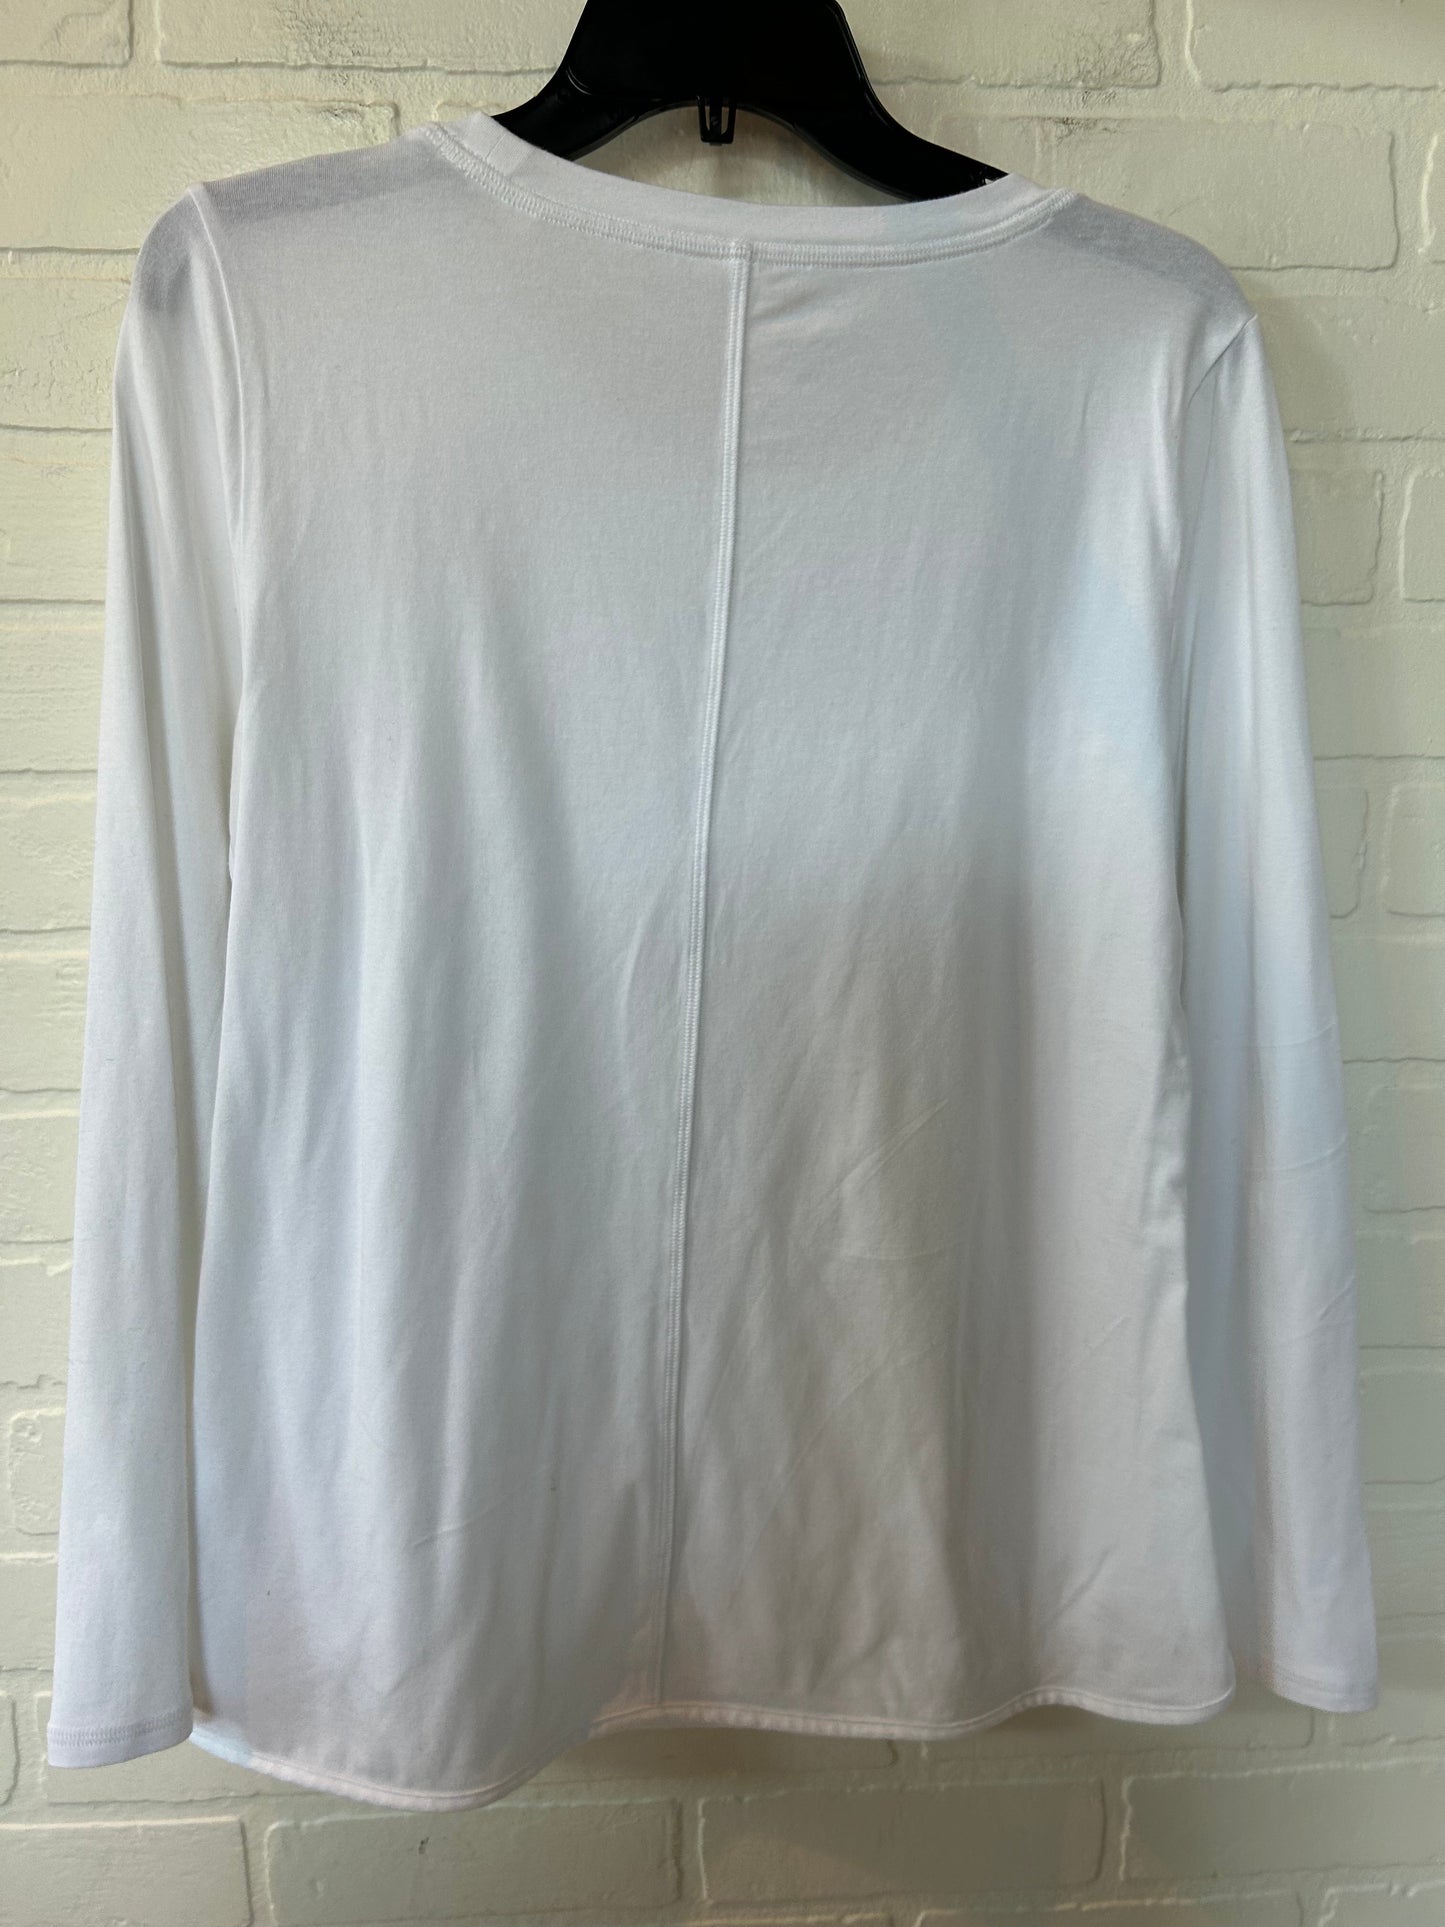 White Top Long Sleeve Basic Talbots, Size M